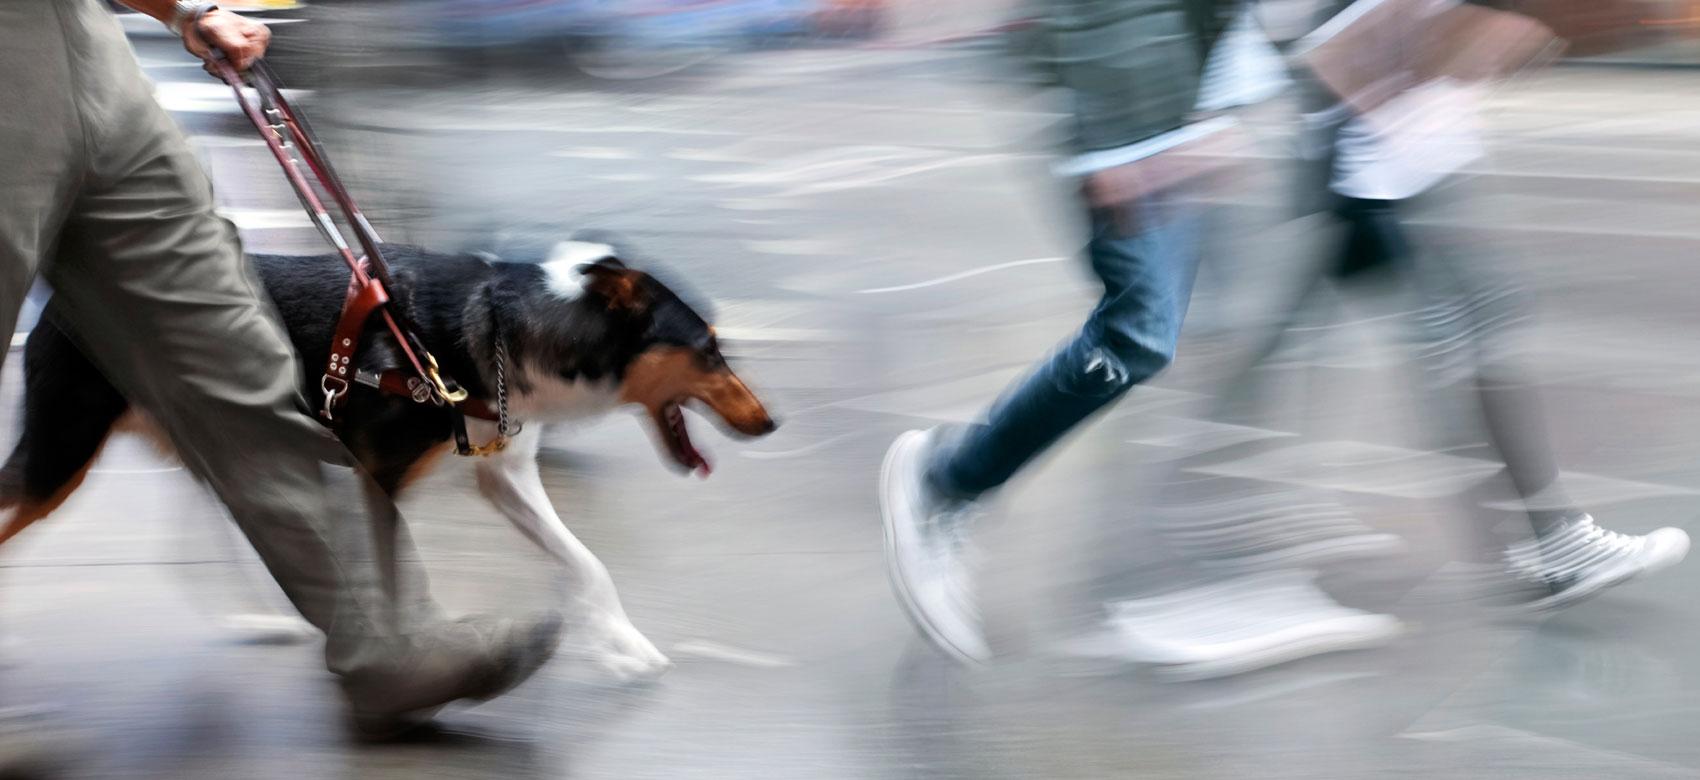 Perro guía orientando a un usuario entre la gente que camina por una calle